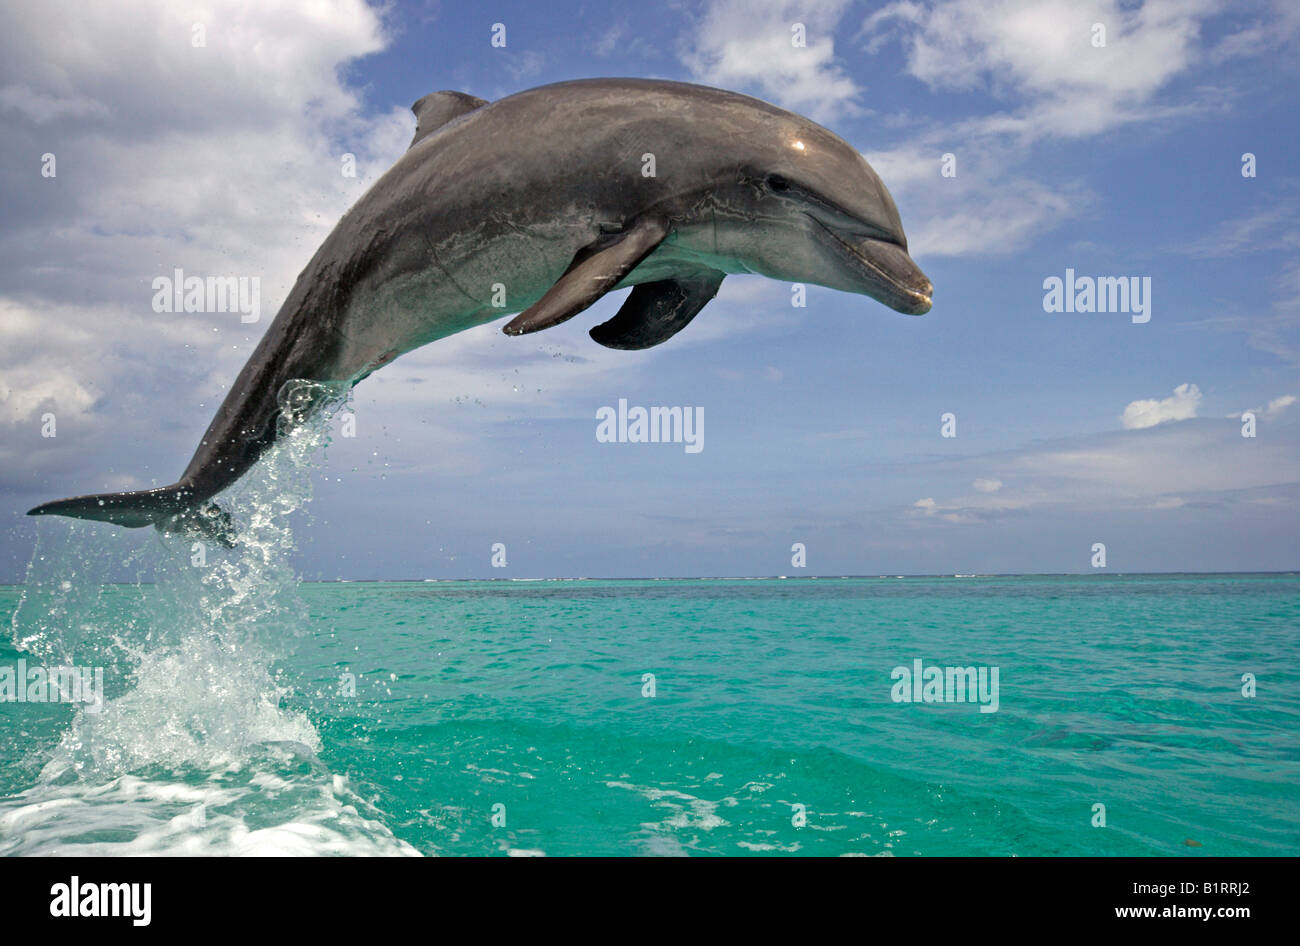 Comunes de Delfín Mular (Tursiops truncatus), adulto, saltando fuera del agua, el Caribe, Roatán, Honduras, América Central Foto de stock